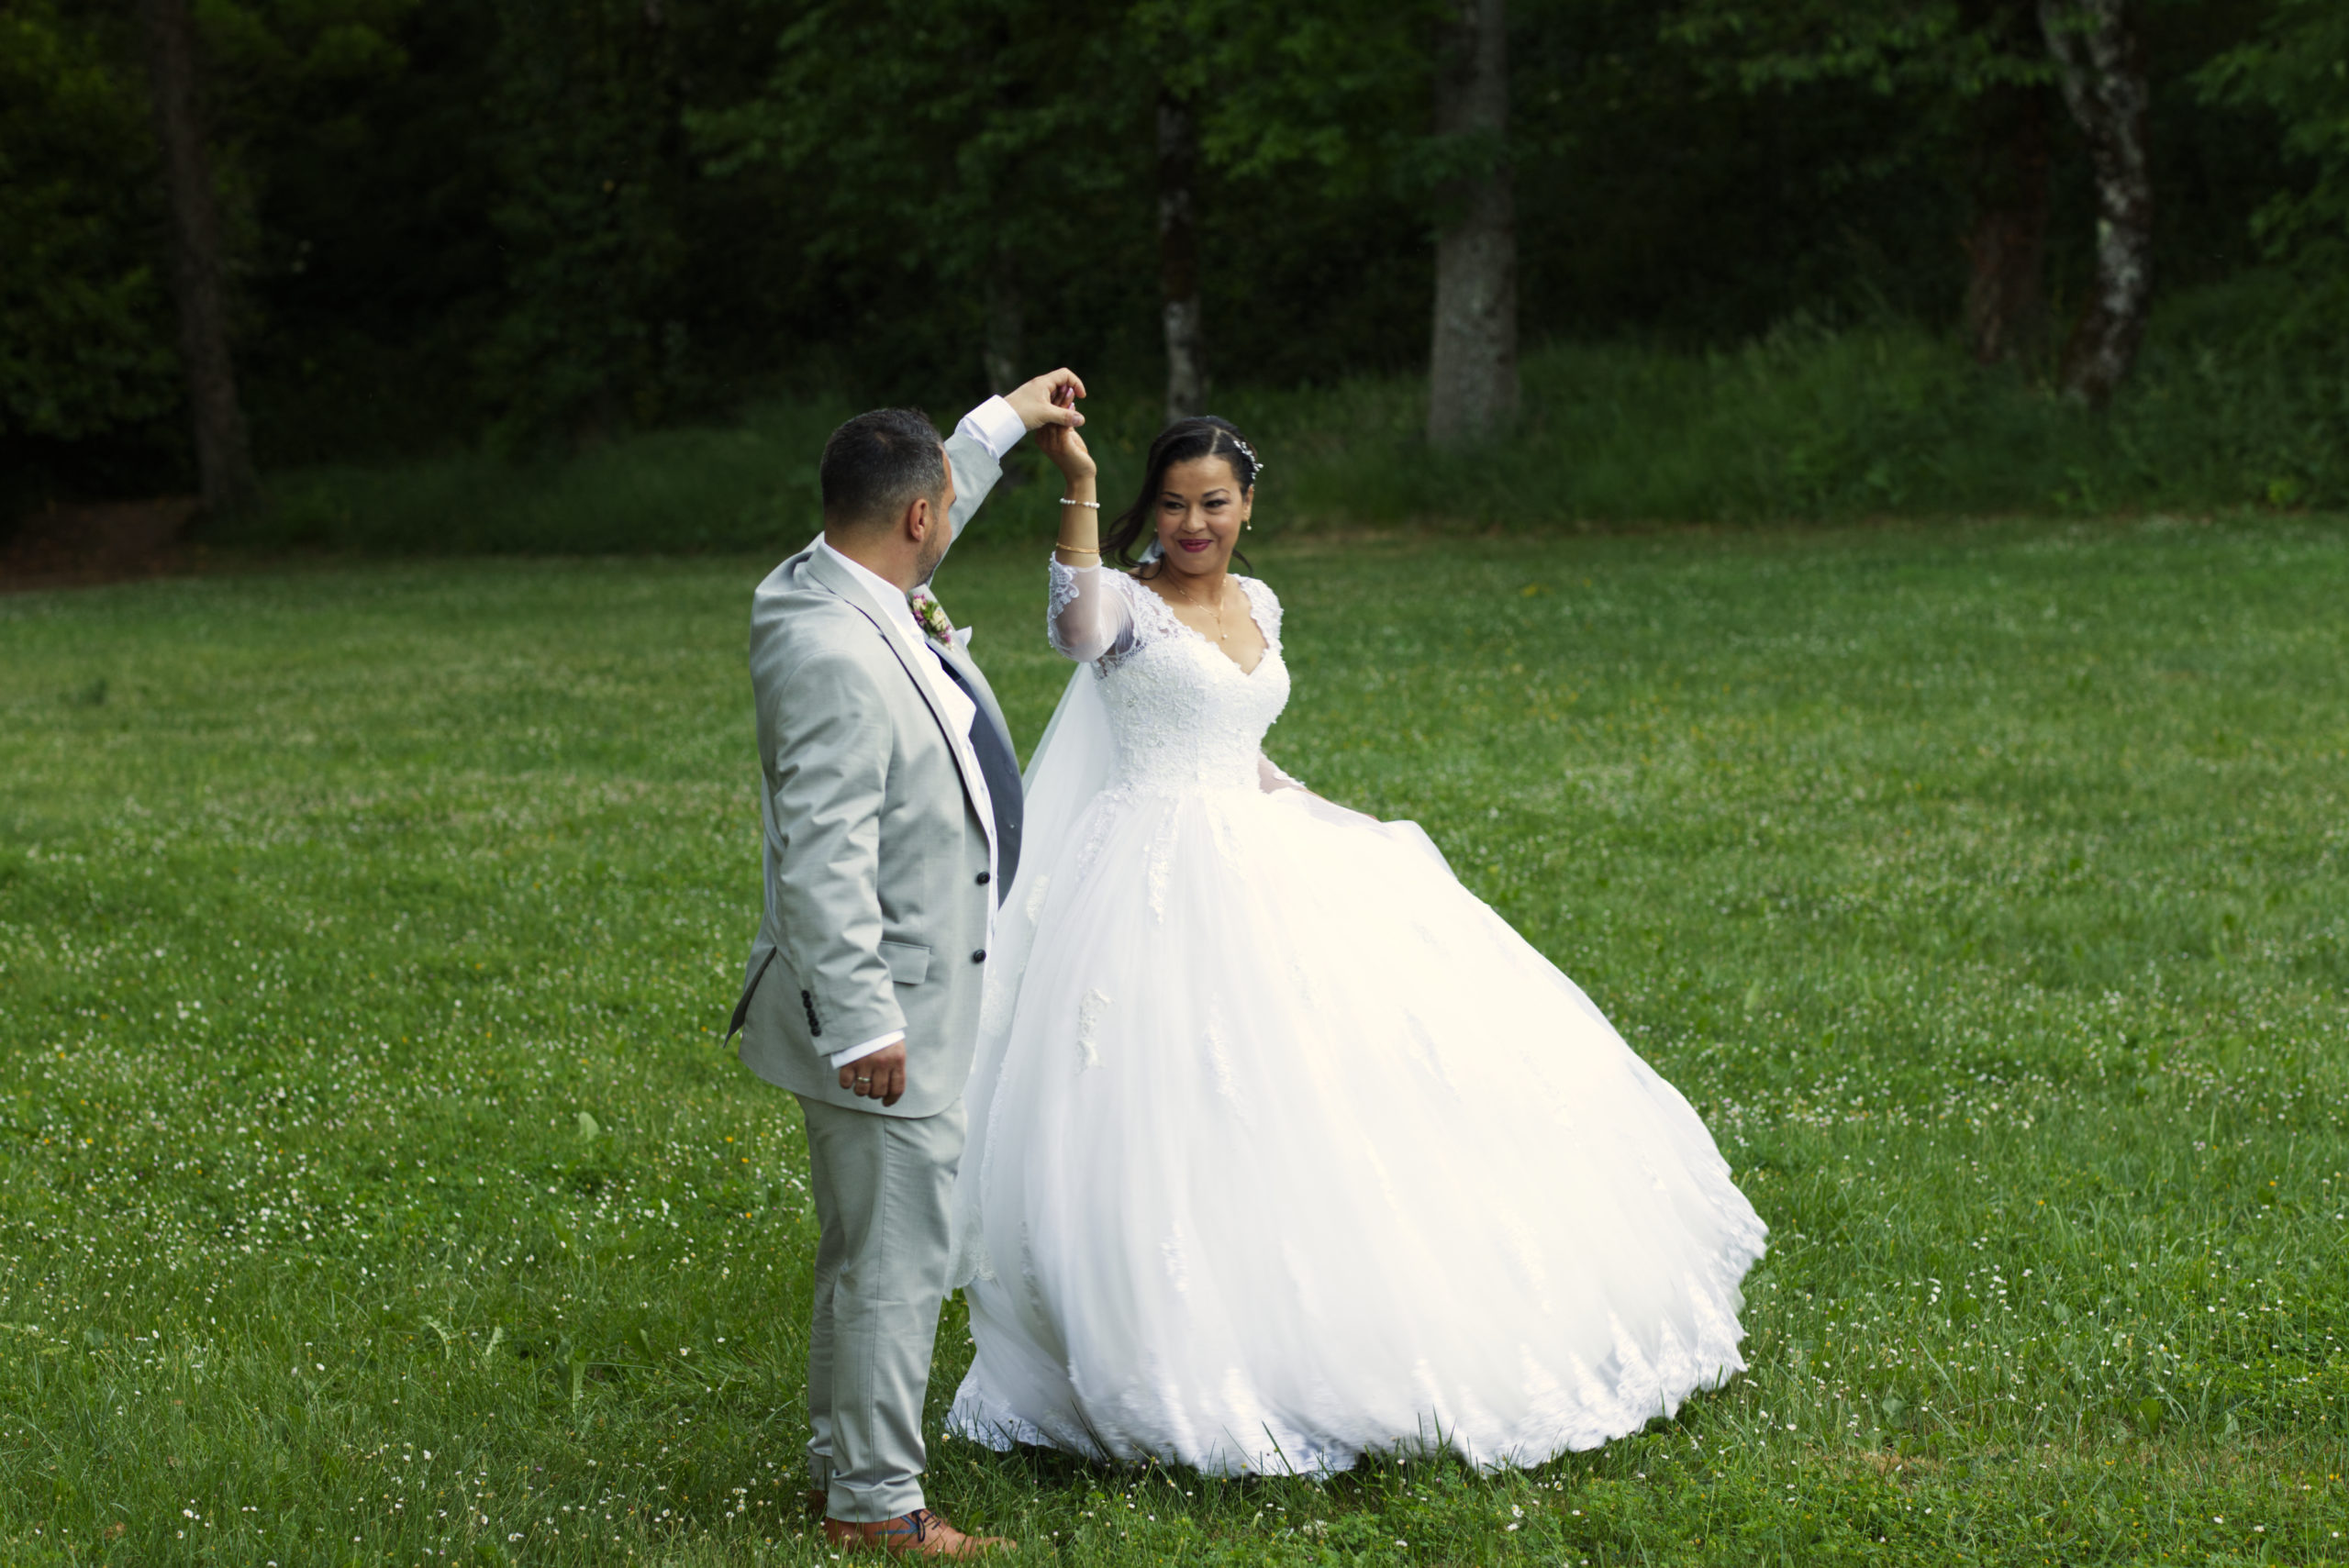 Lire la suite à propos de l’article Faire appel à un photographe professionnel pour votre mariage